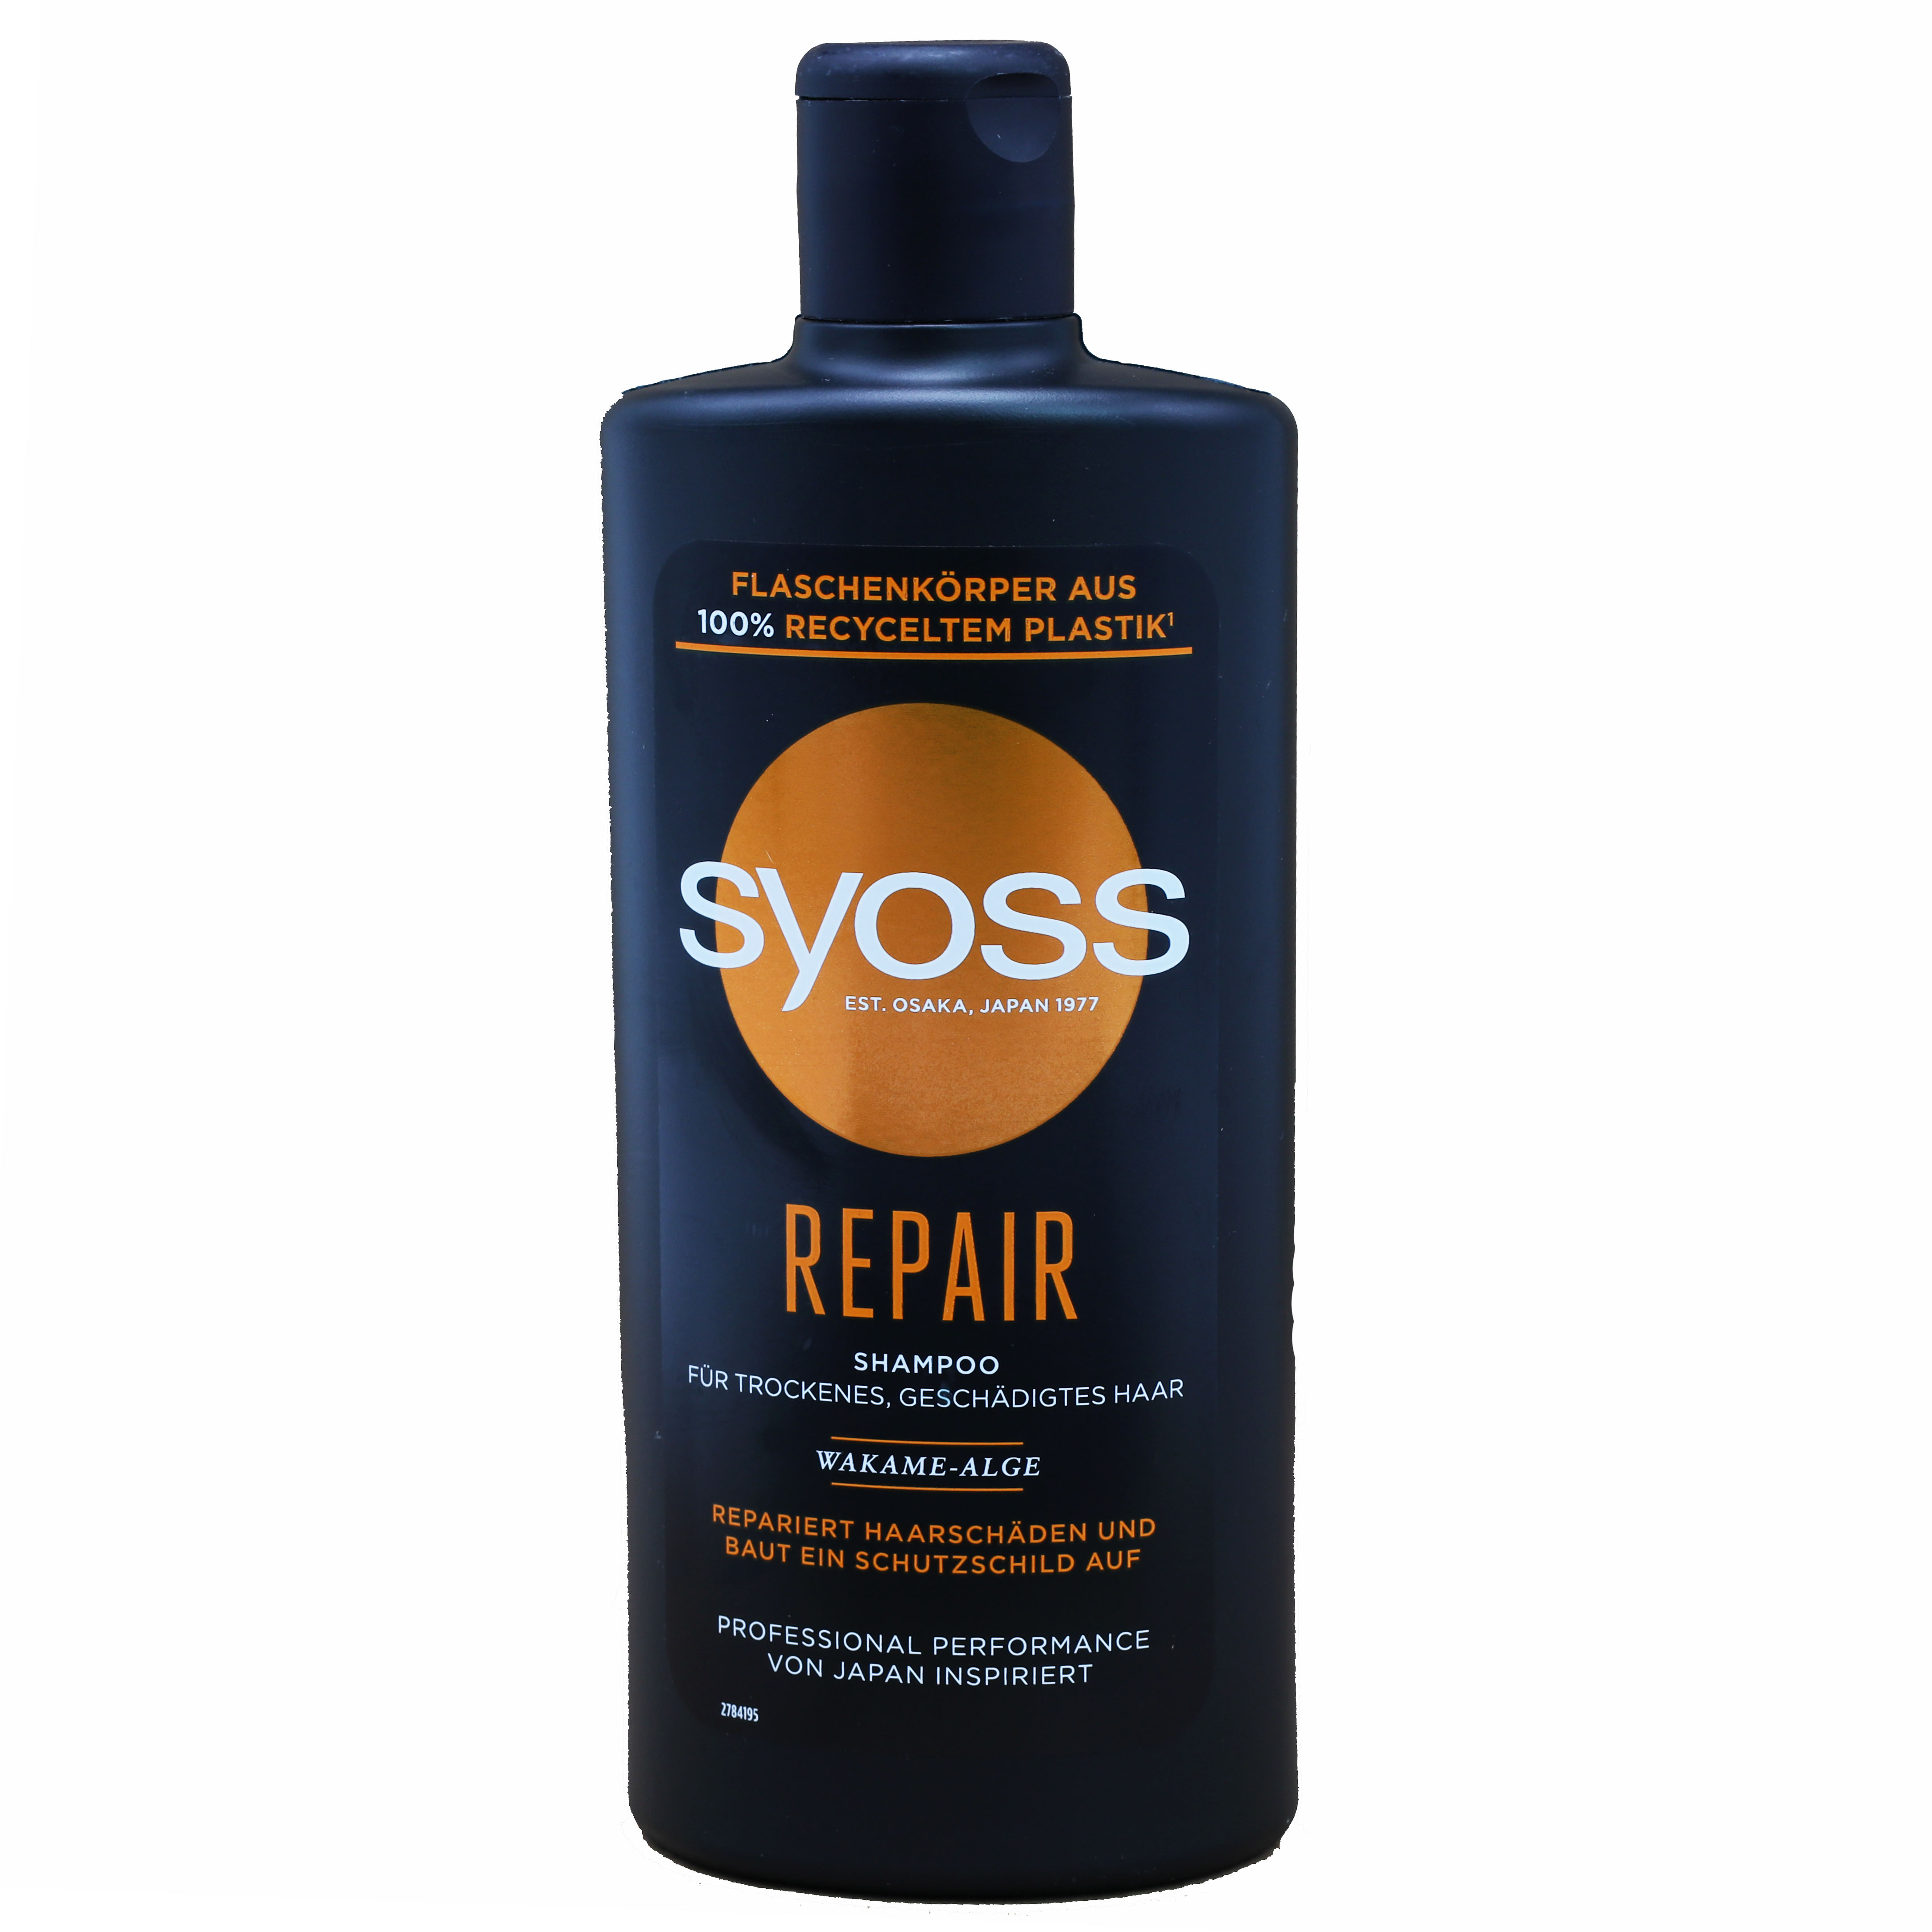 *Syoss Shampoo Shampoo 440ml Repair